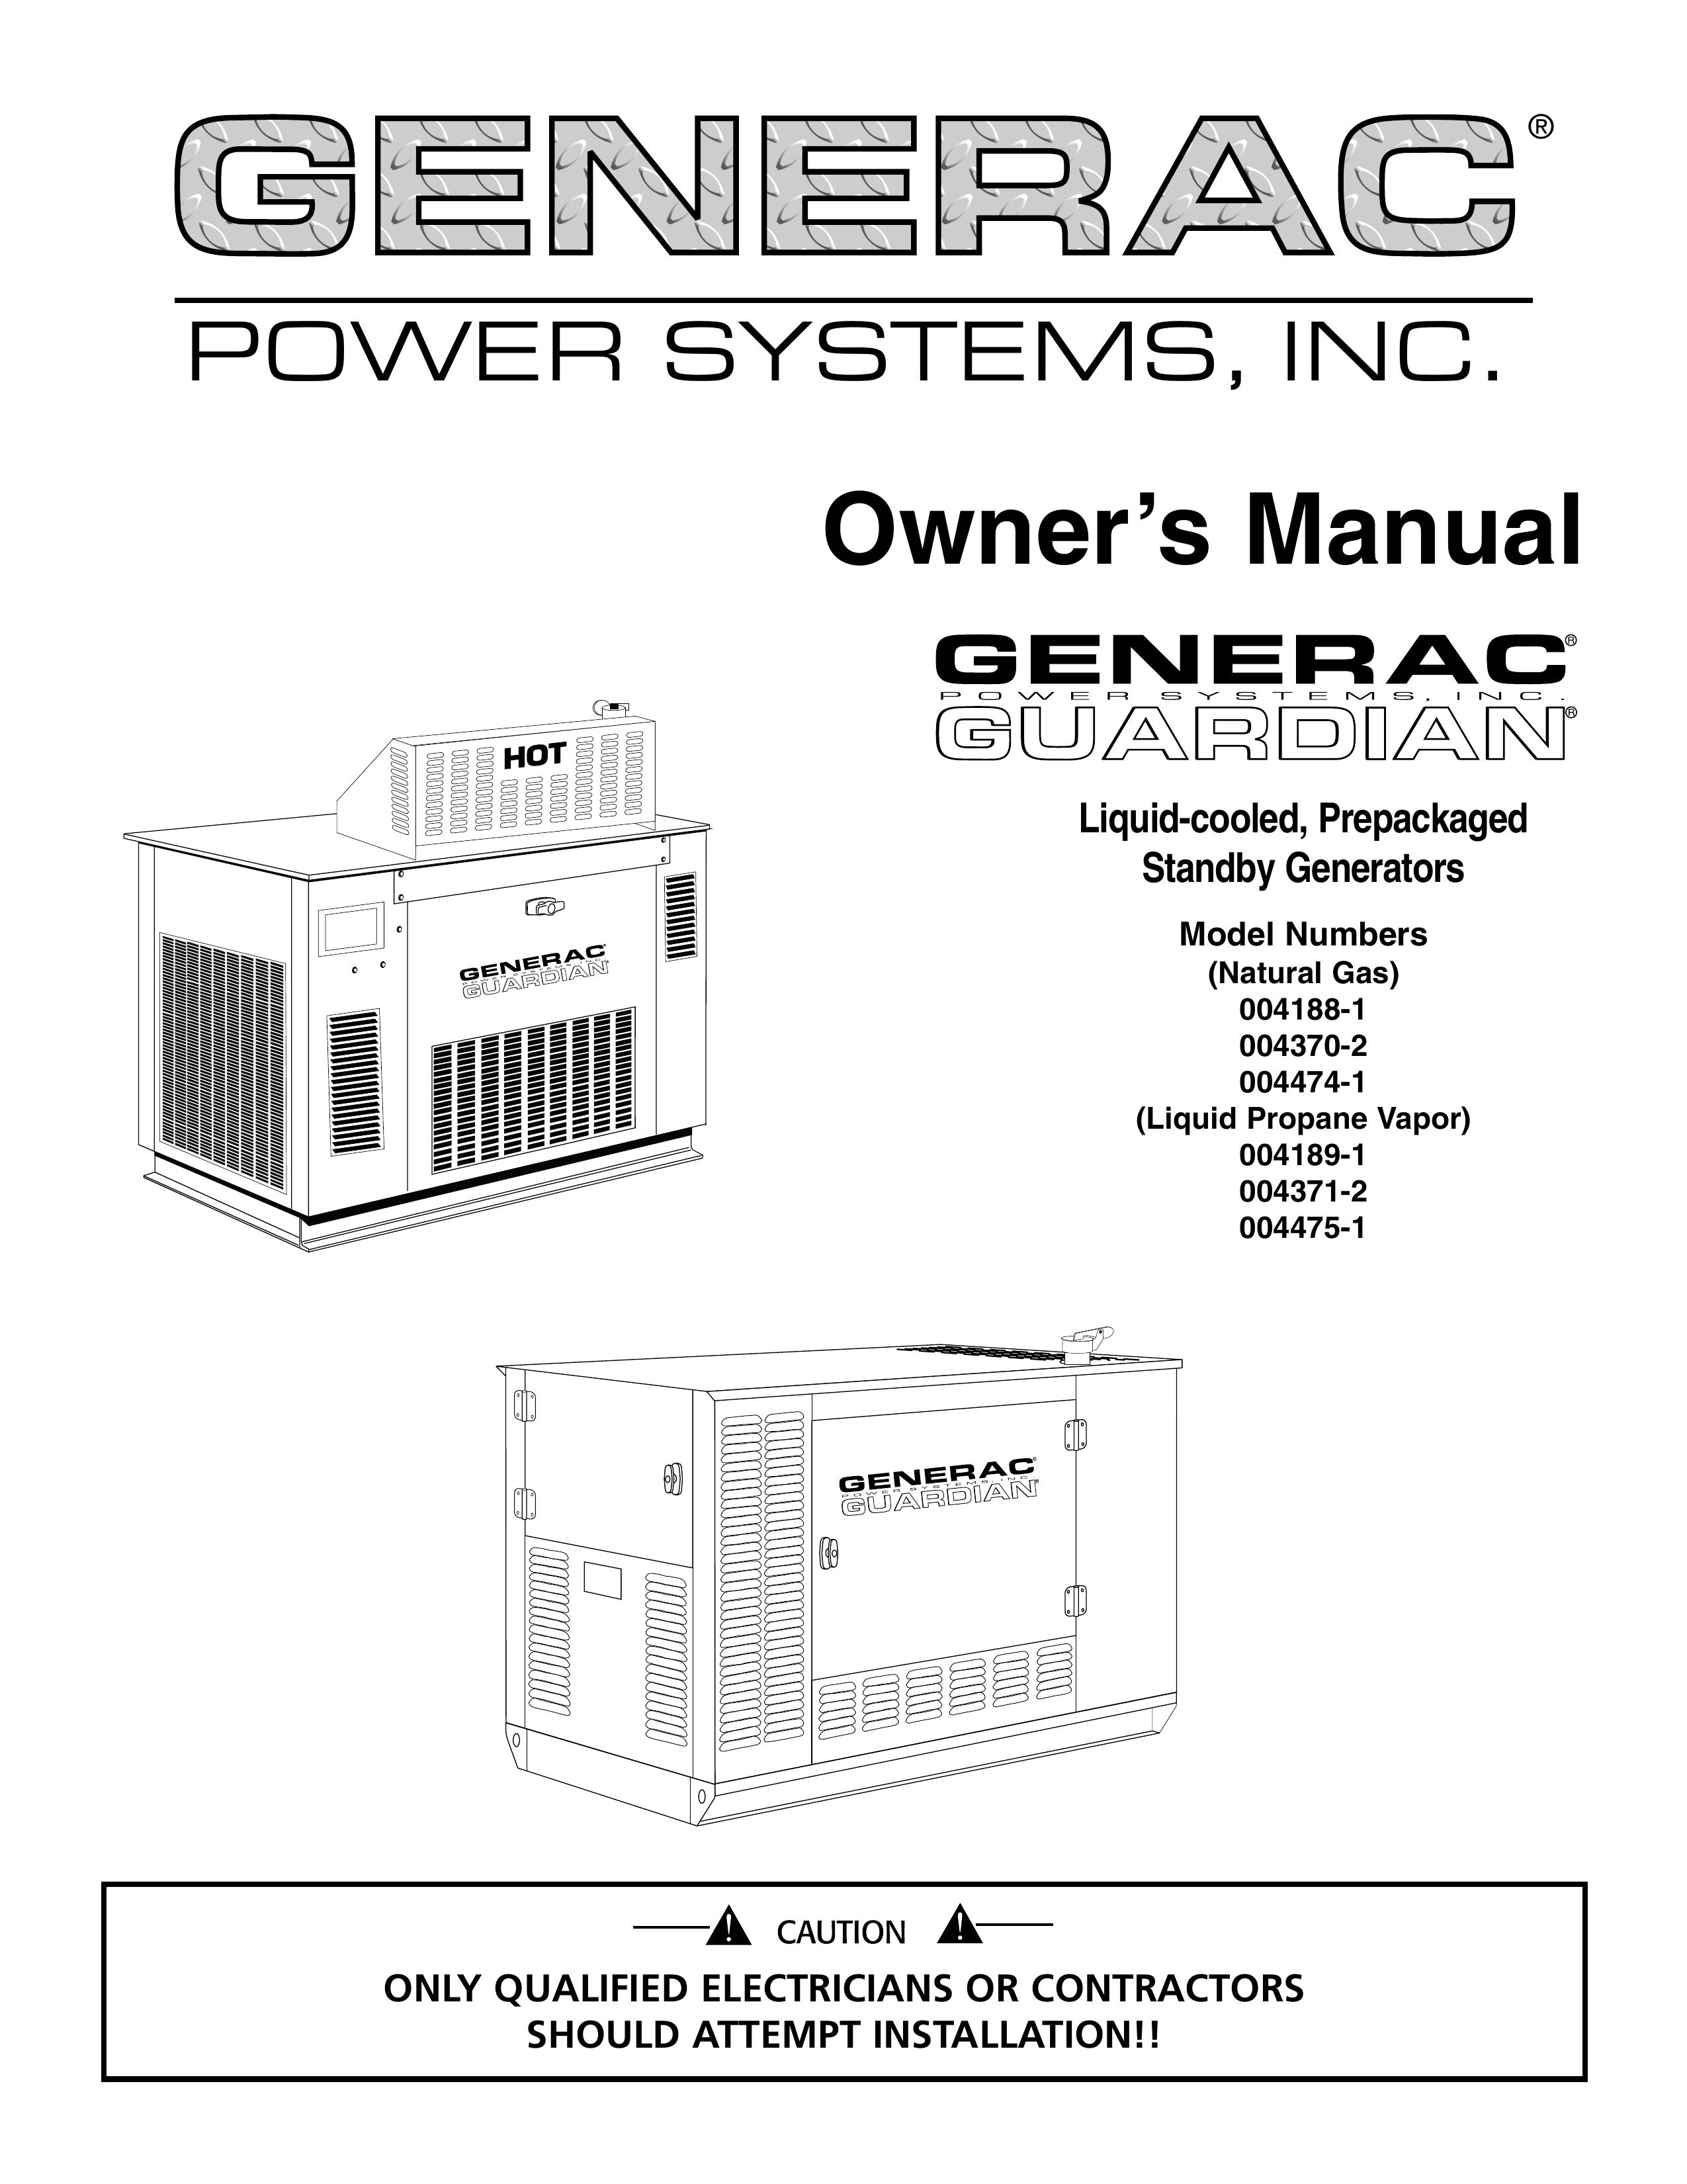 Generac 004189-1 Portable Generator User Manual